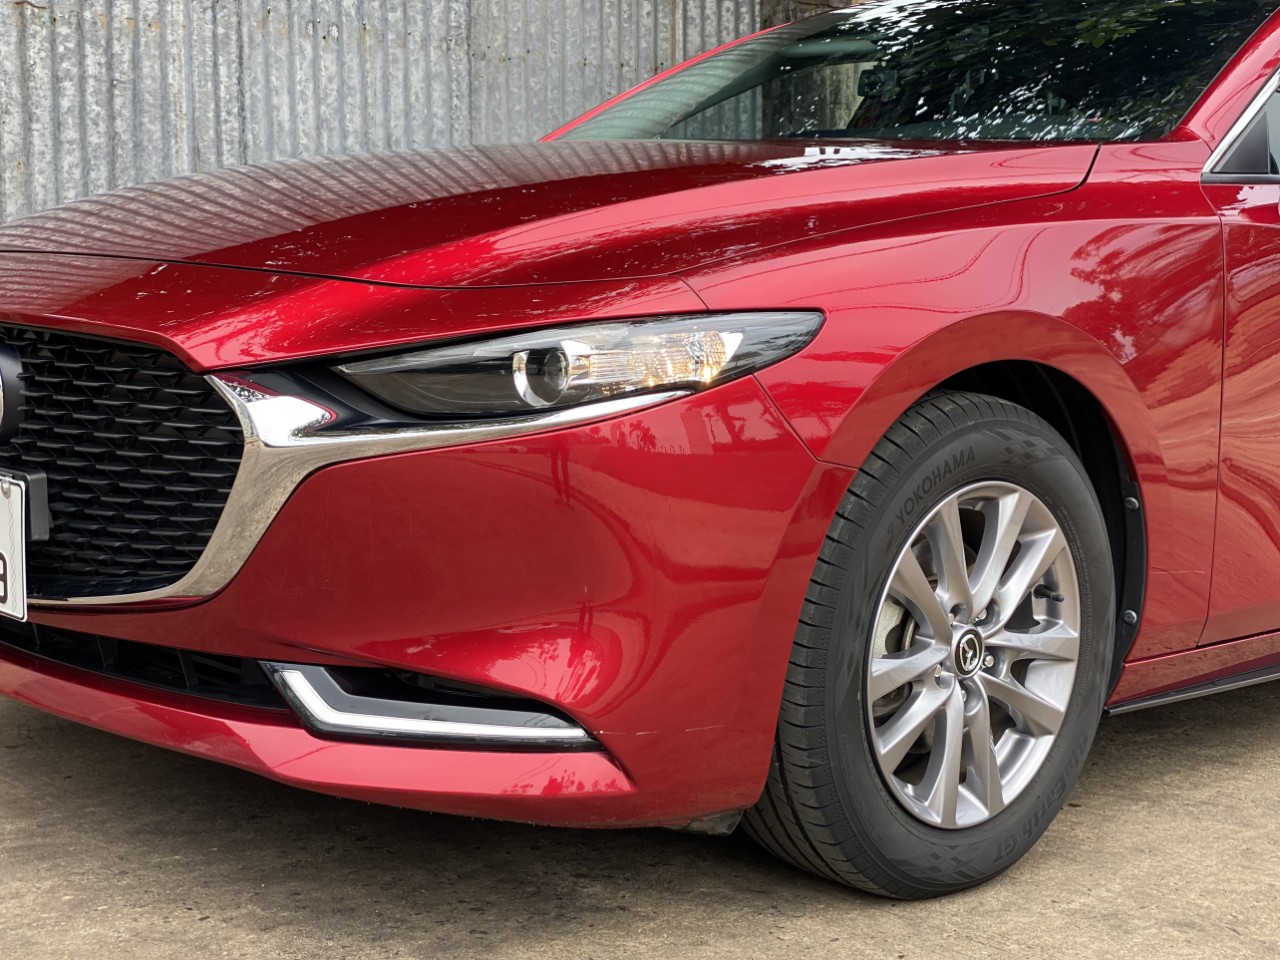 Bán Mazda3 sản xuất 2020 bản Luxury 1.5 AT